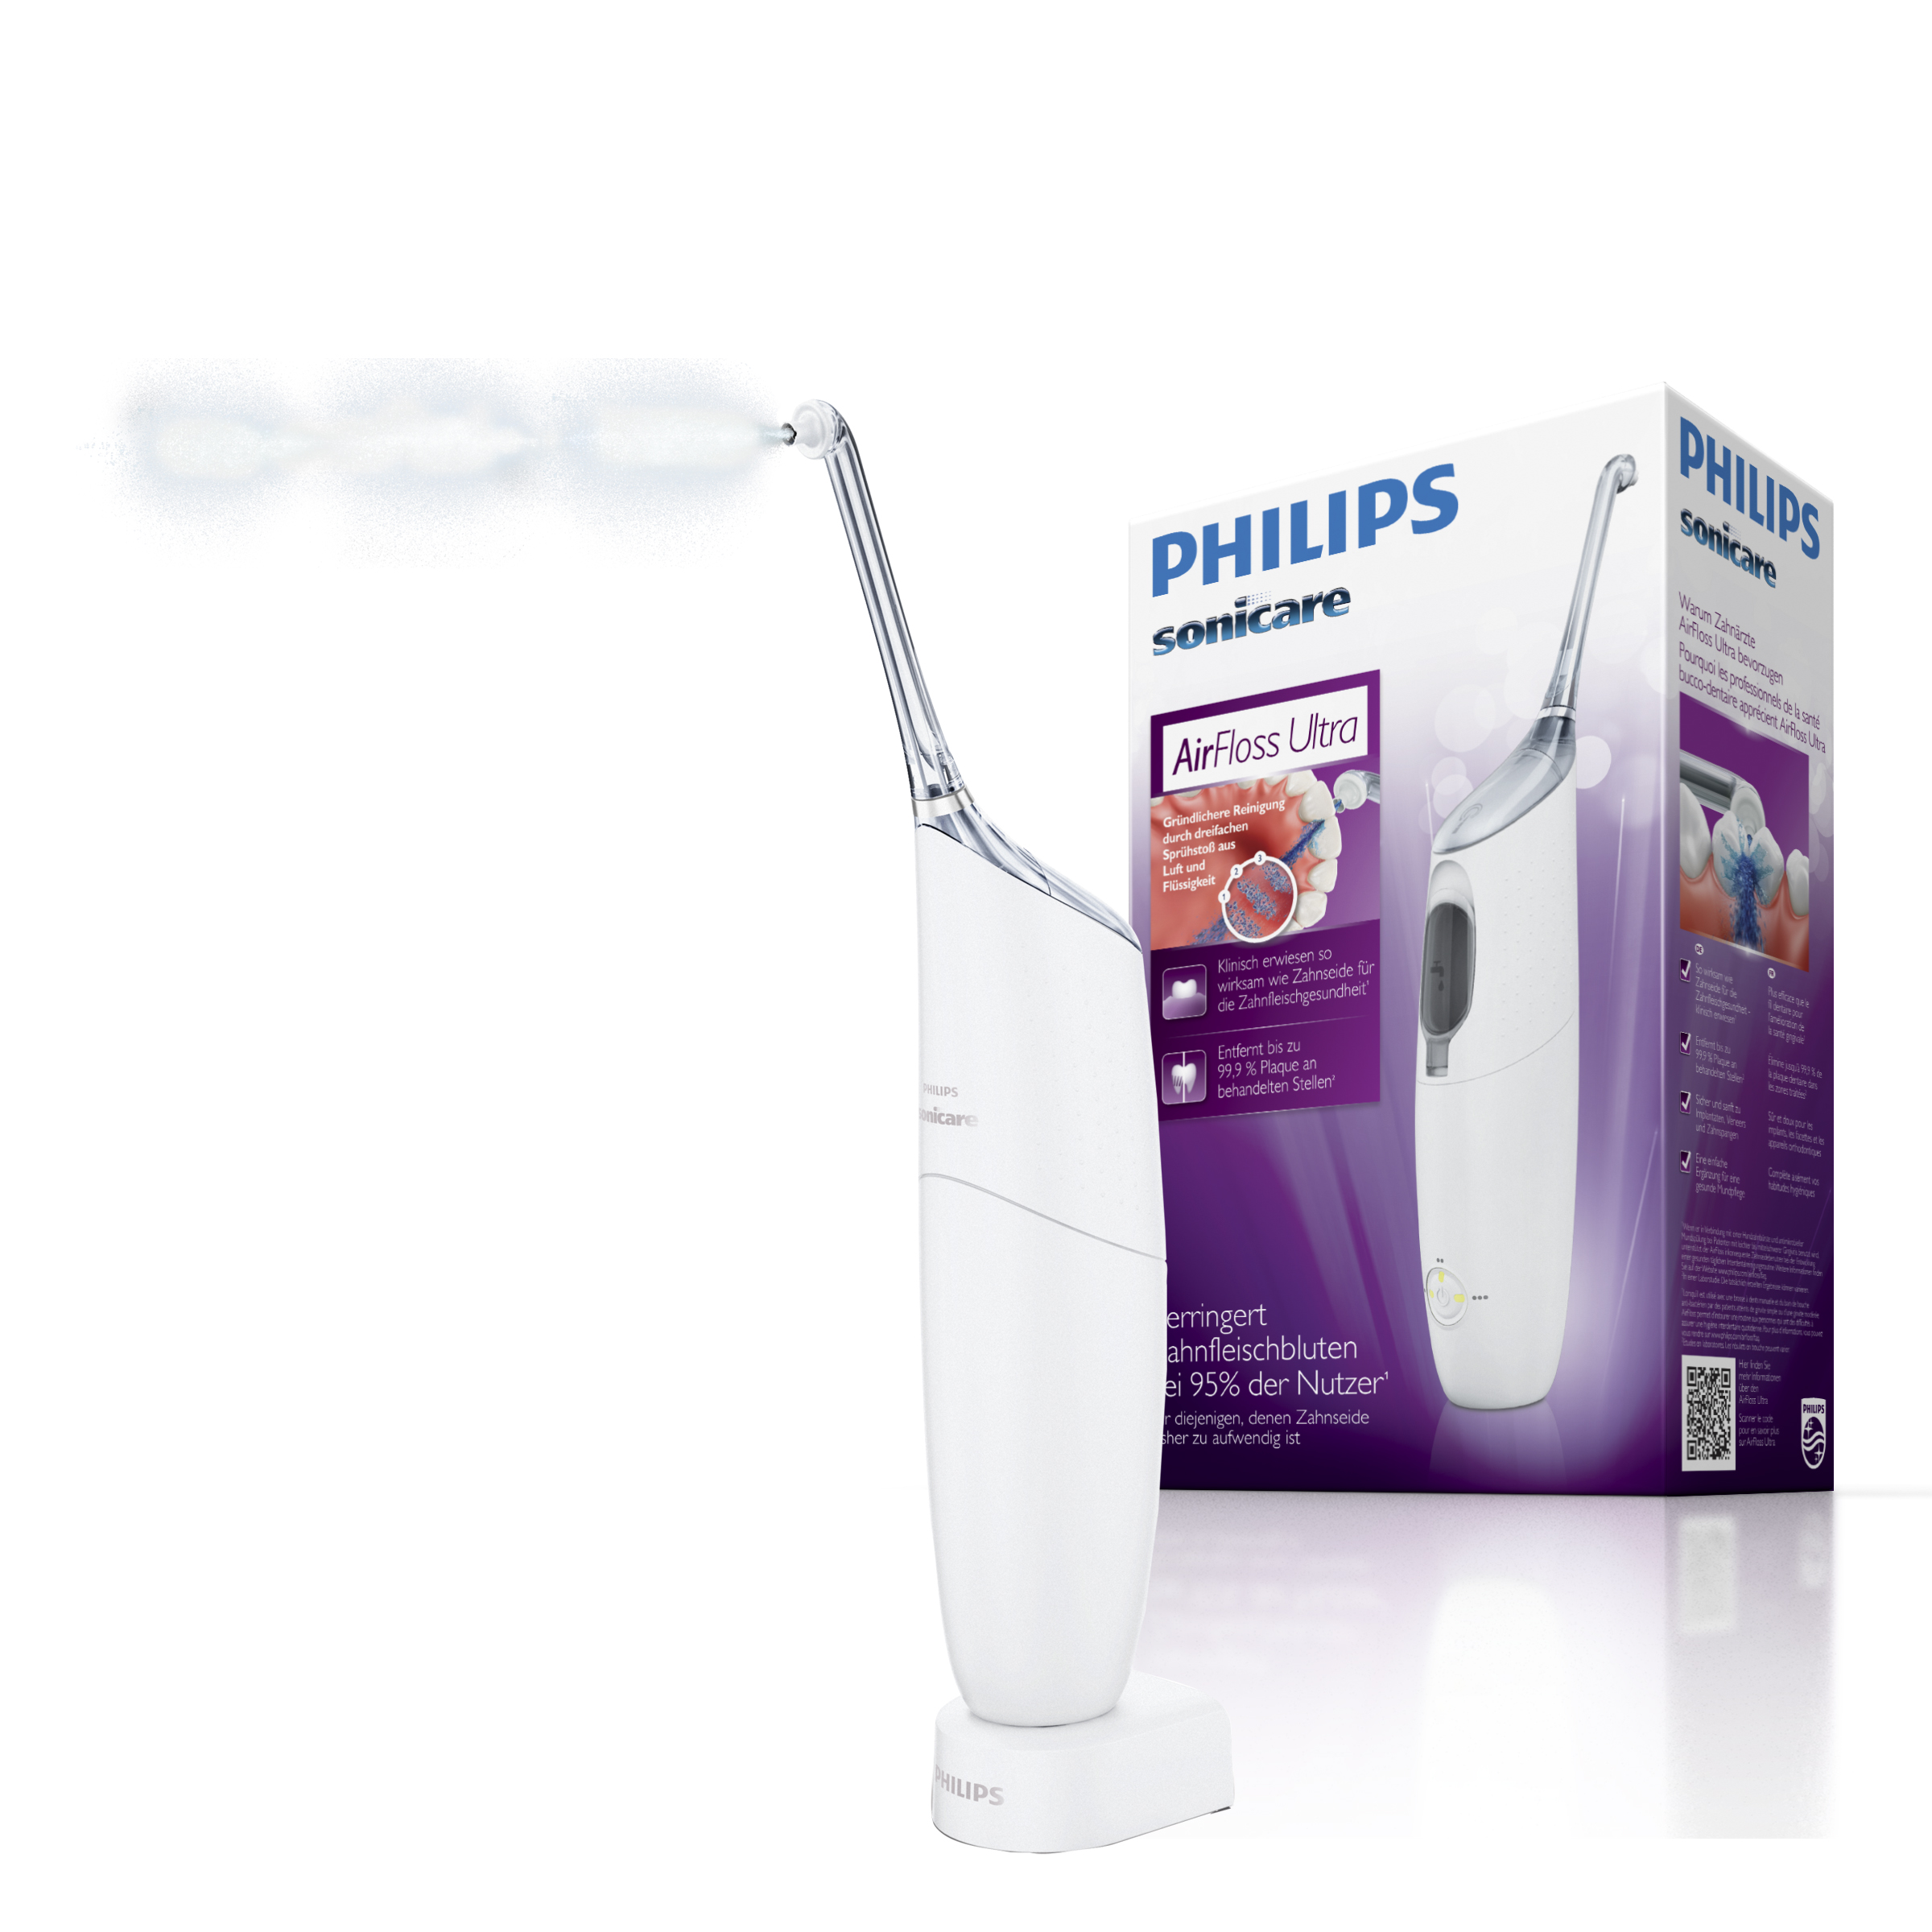 Philips AirFloss Ultra HX8331/01 прибор для очистки межзубных промежутков